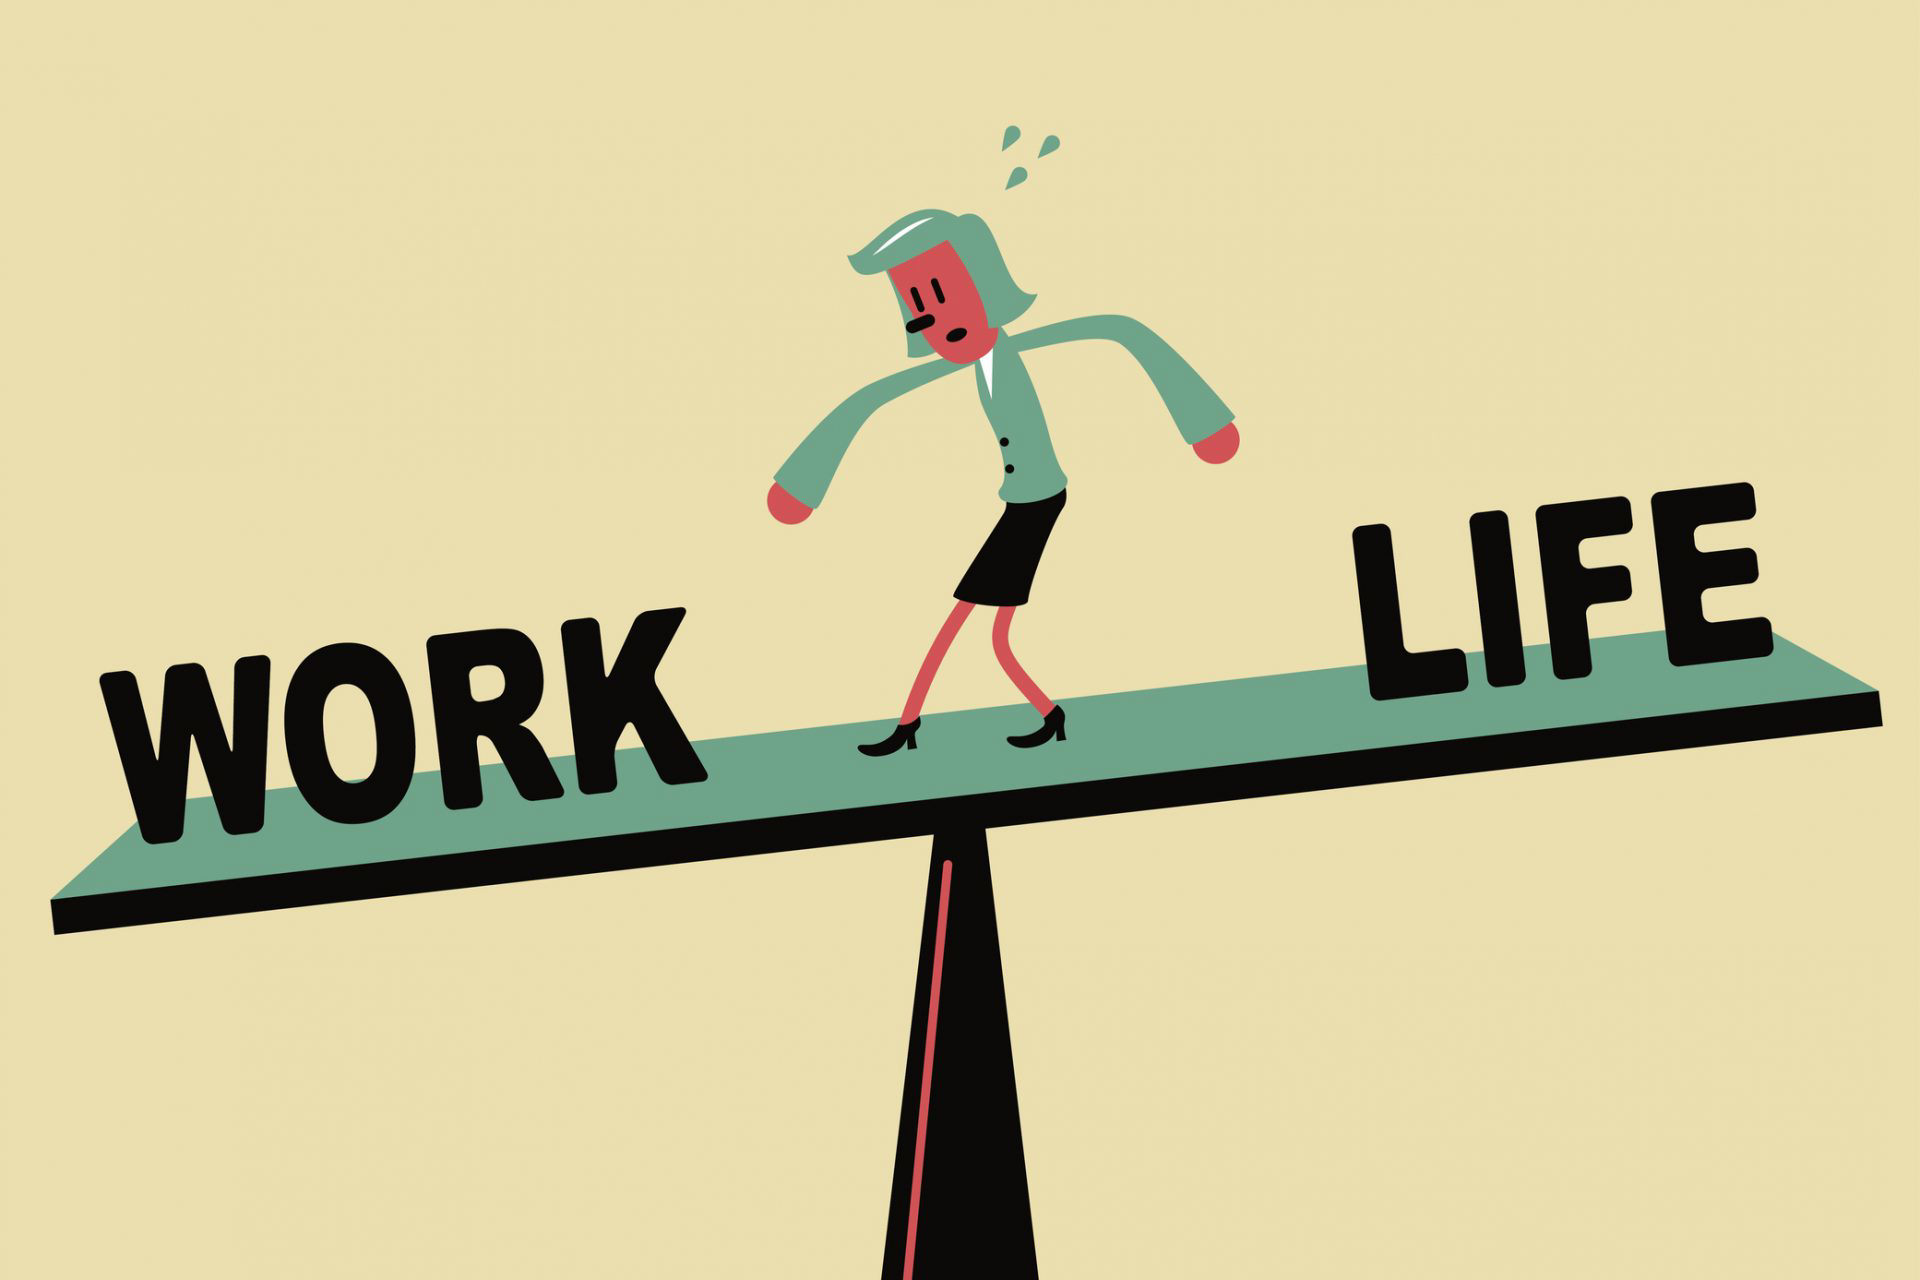 Work part of life. Work-Life Balance. Work Life Balance картинки. Ворк лайф баланс. Баланс между работой и отдыхом.